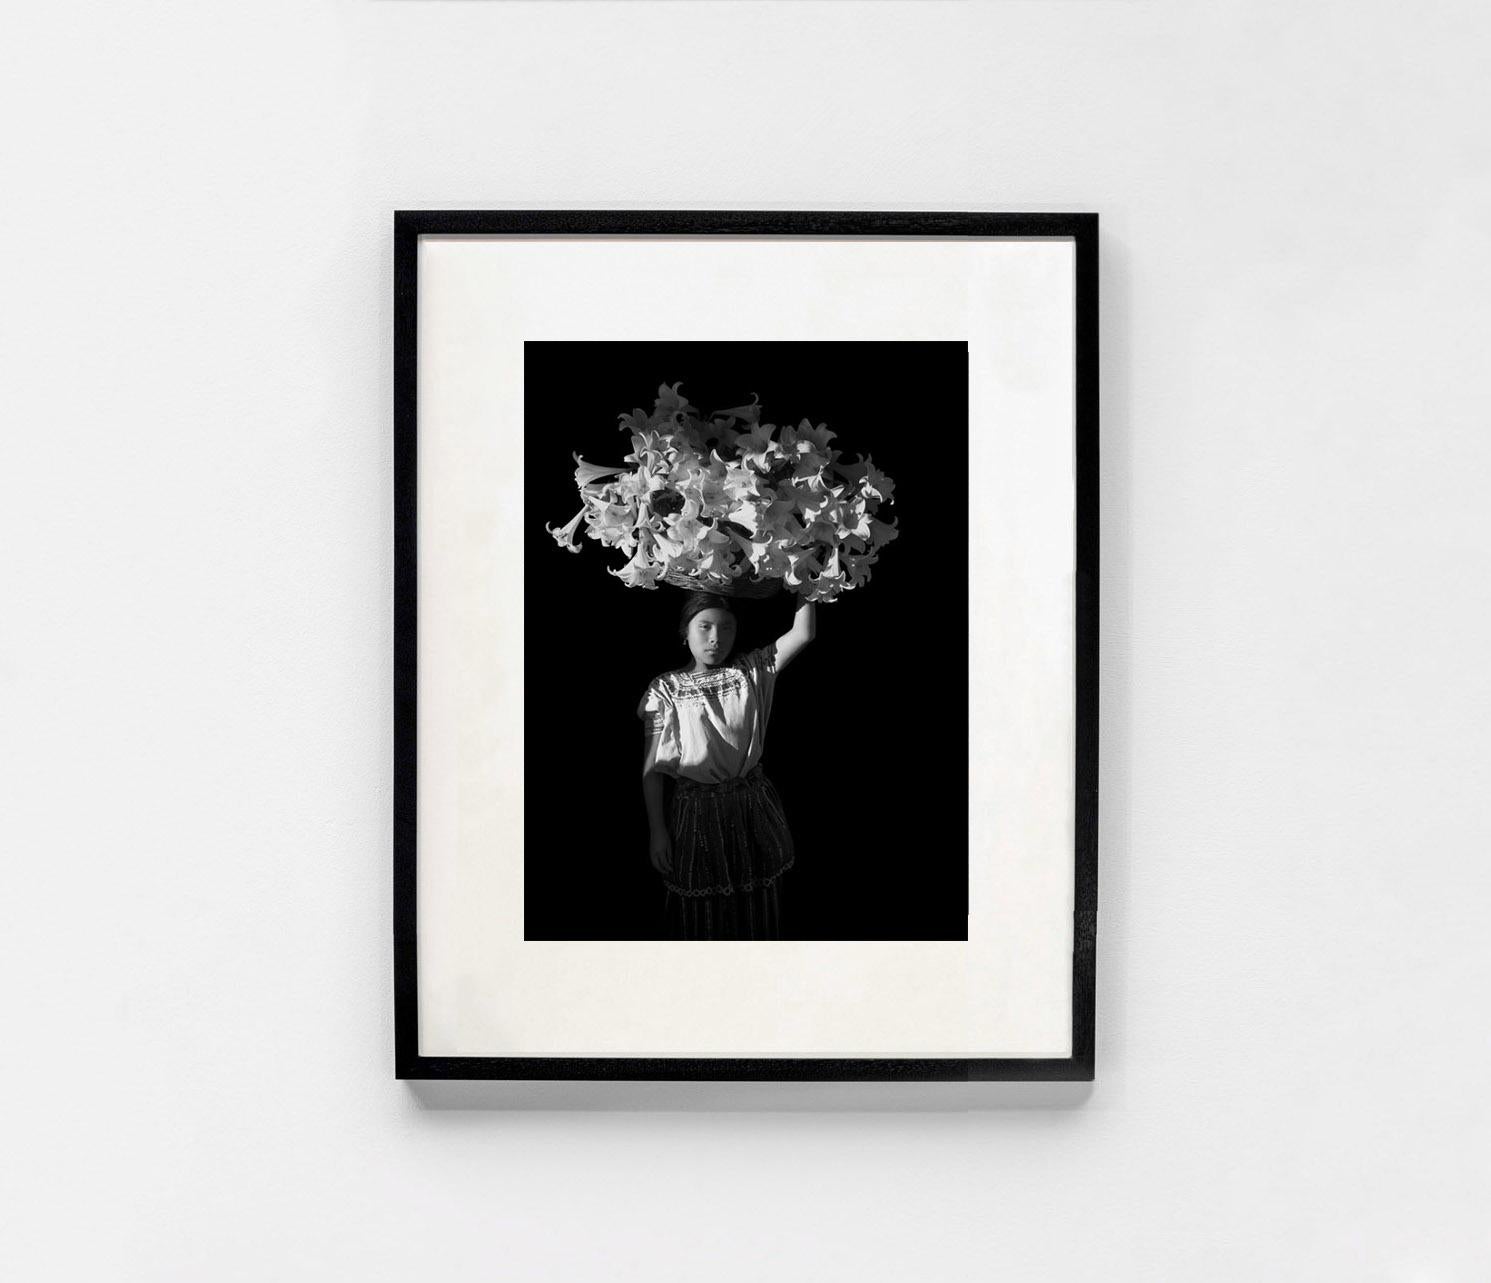 Canasta de Luz, Guatemala - Flor Garduño (Black and White Photography) For Sale 1